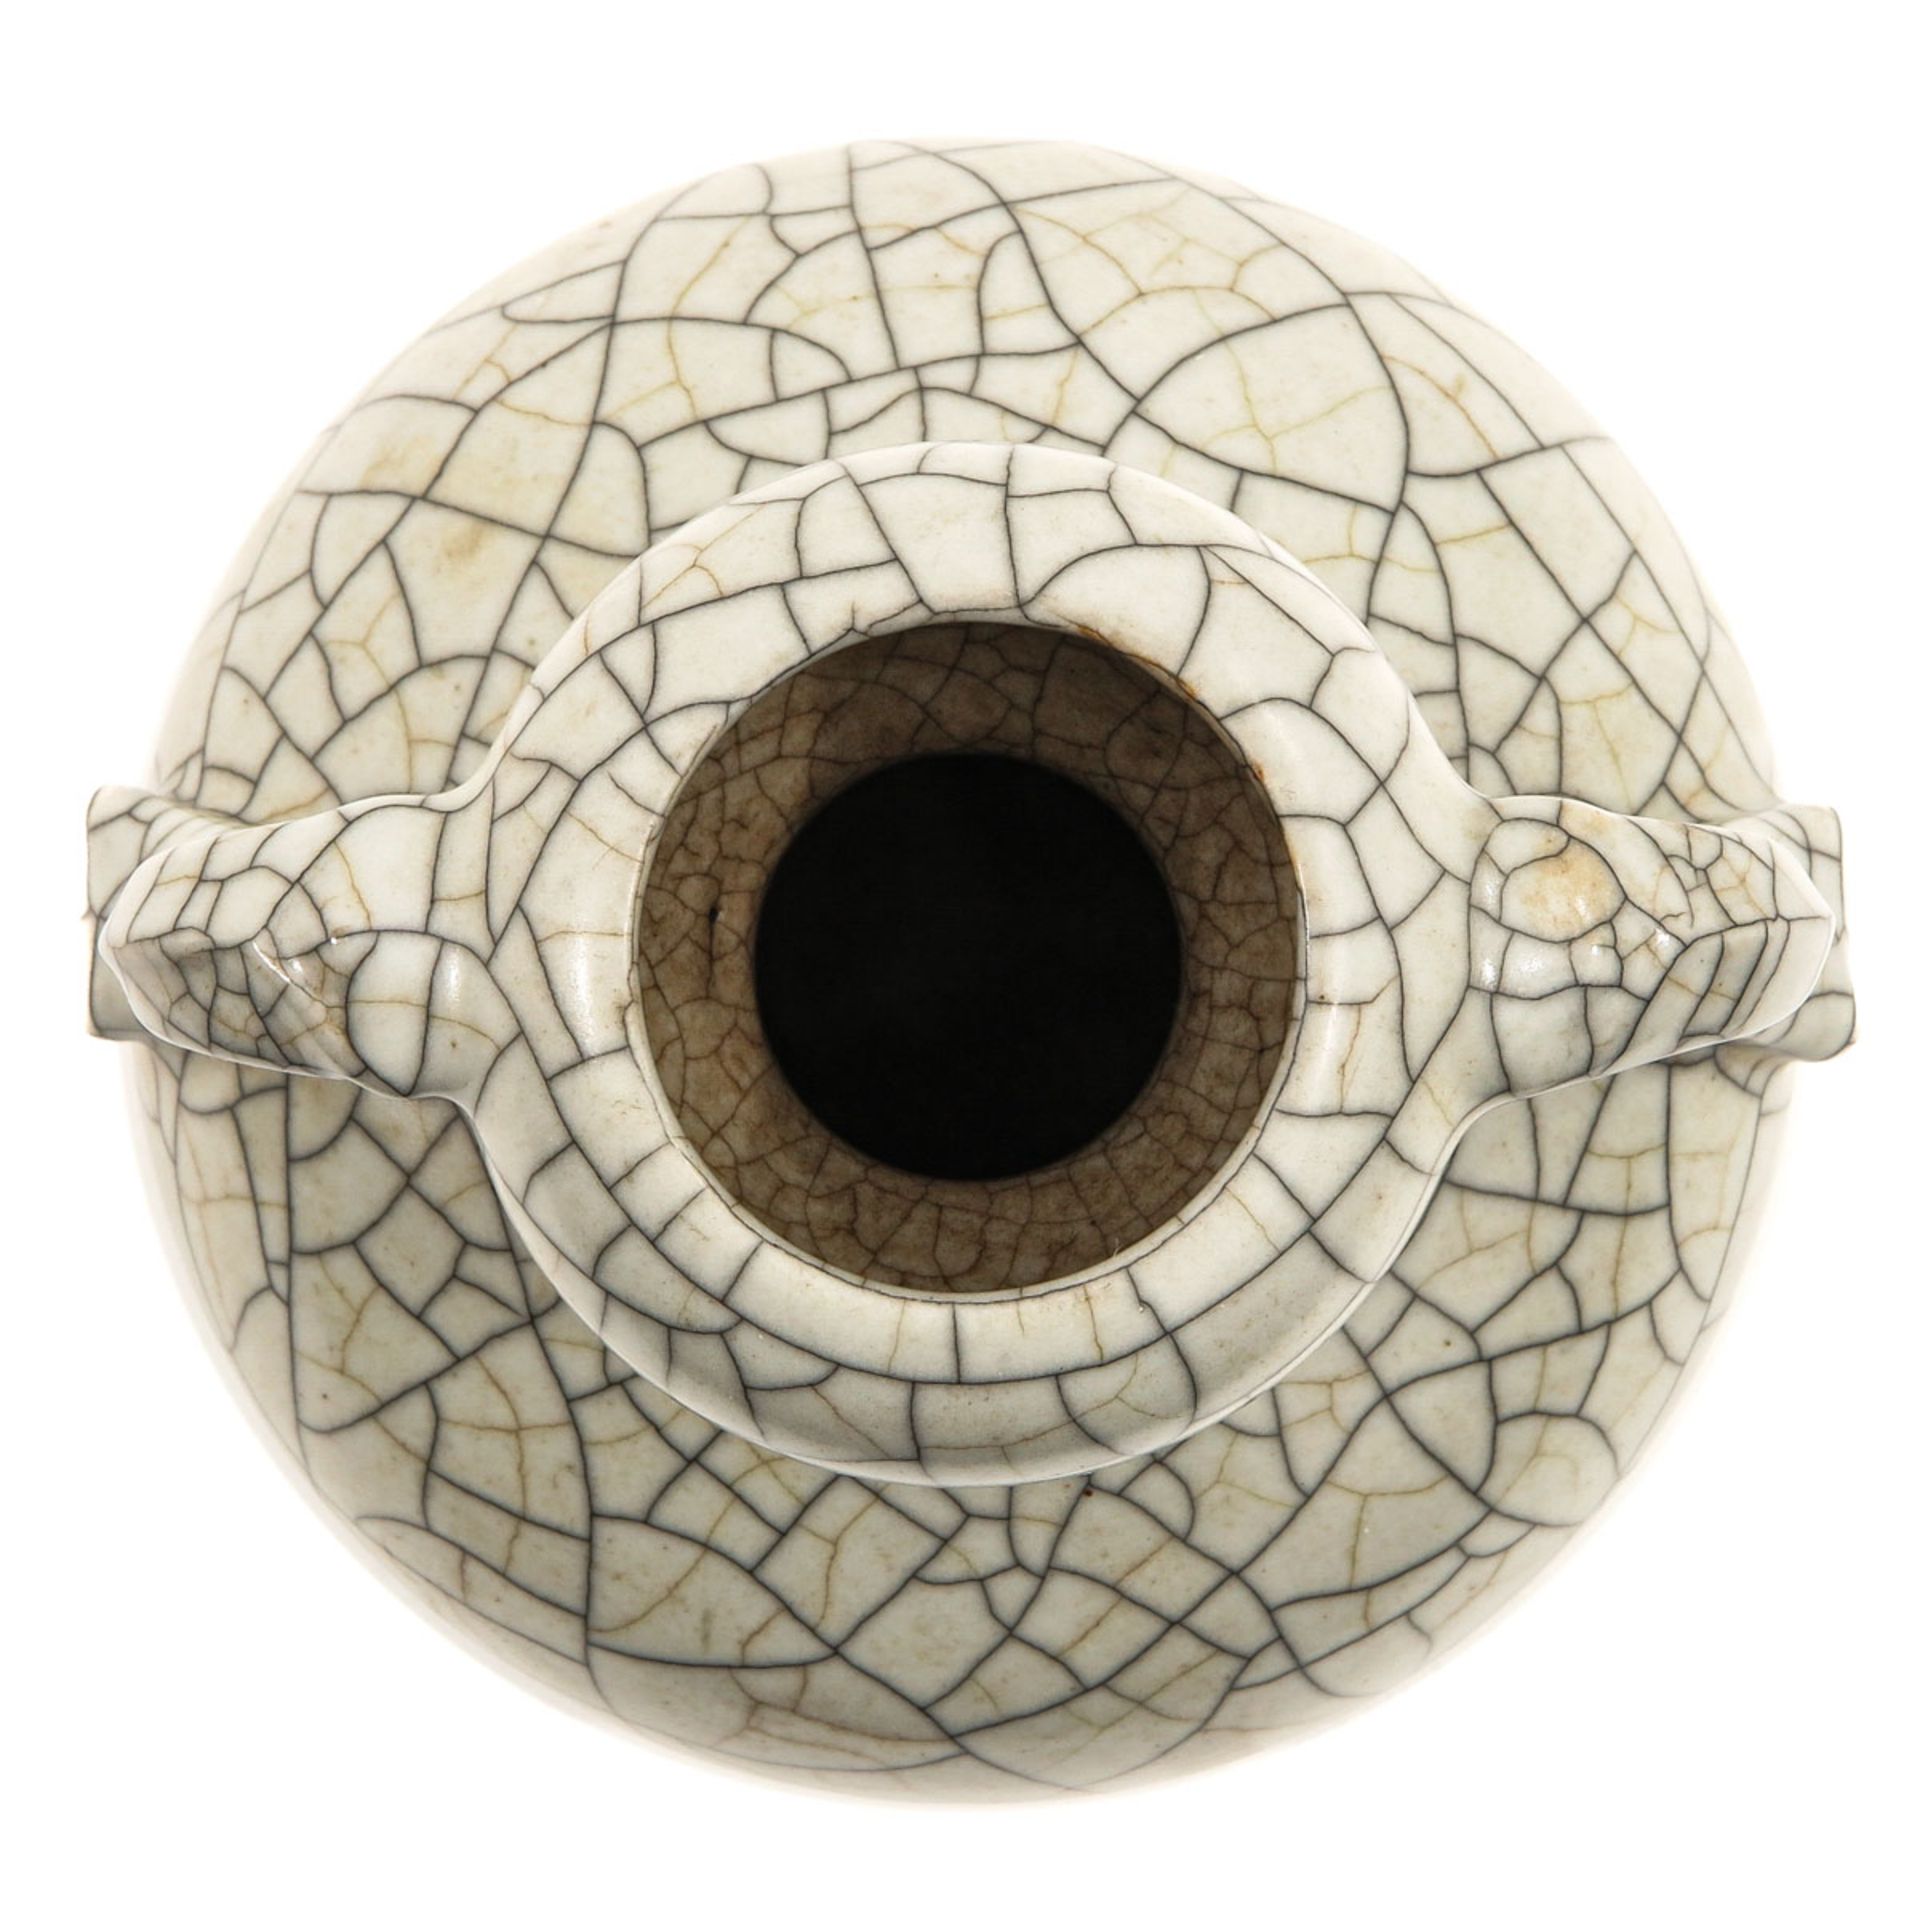 A Crackle Decor Vase - Image 5 of 9